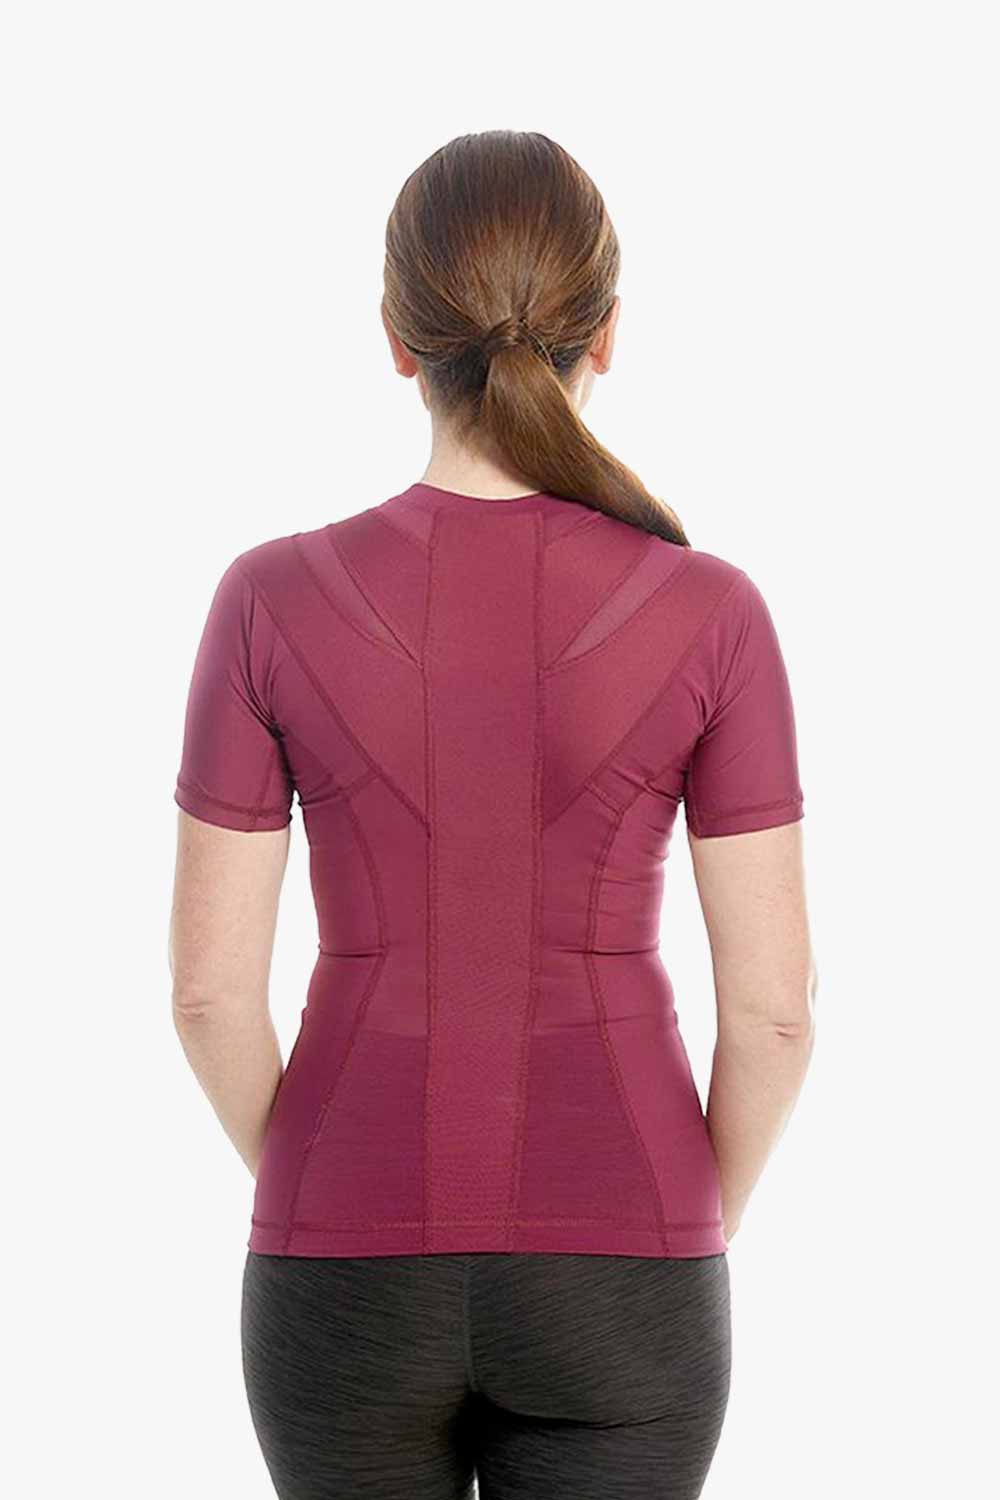 'Women''s Posture Shirt™ - Burgund'